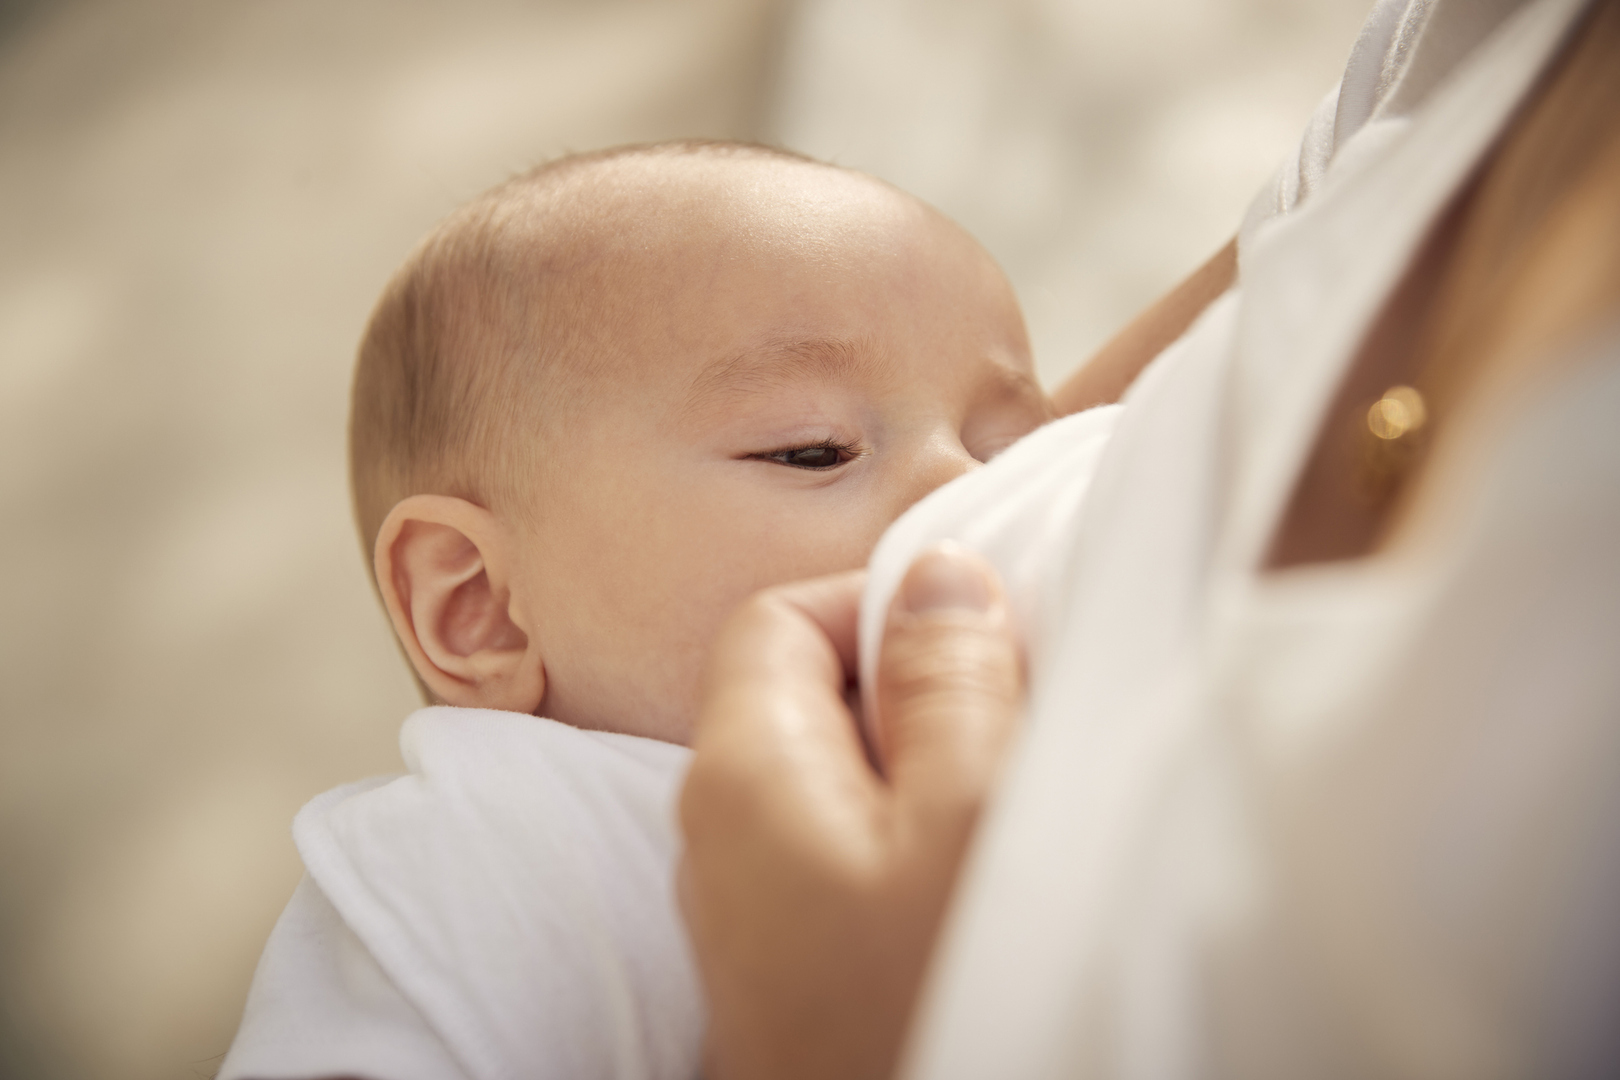 الرضاعة الطبيعية تقلل من خطر الإصابة بأمراض مهددة للحياة لدى الأمهات